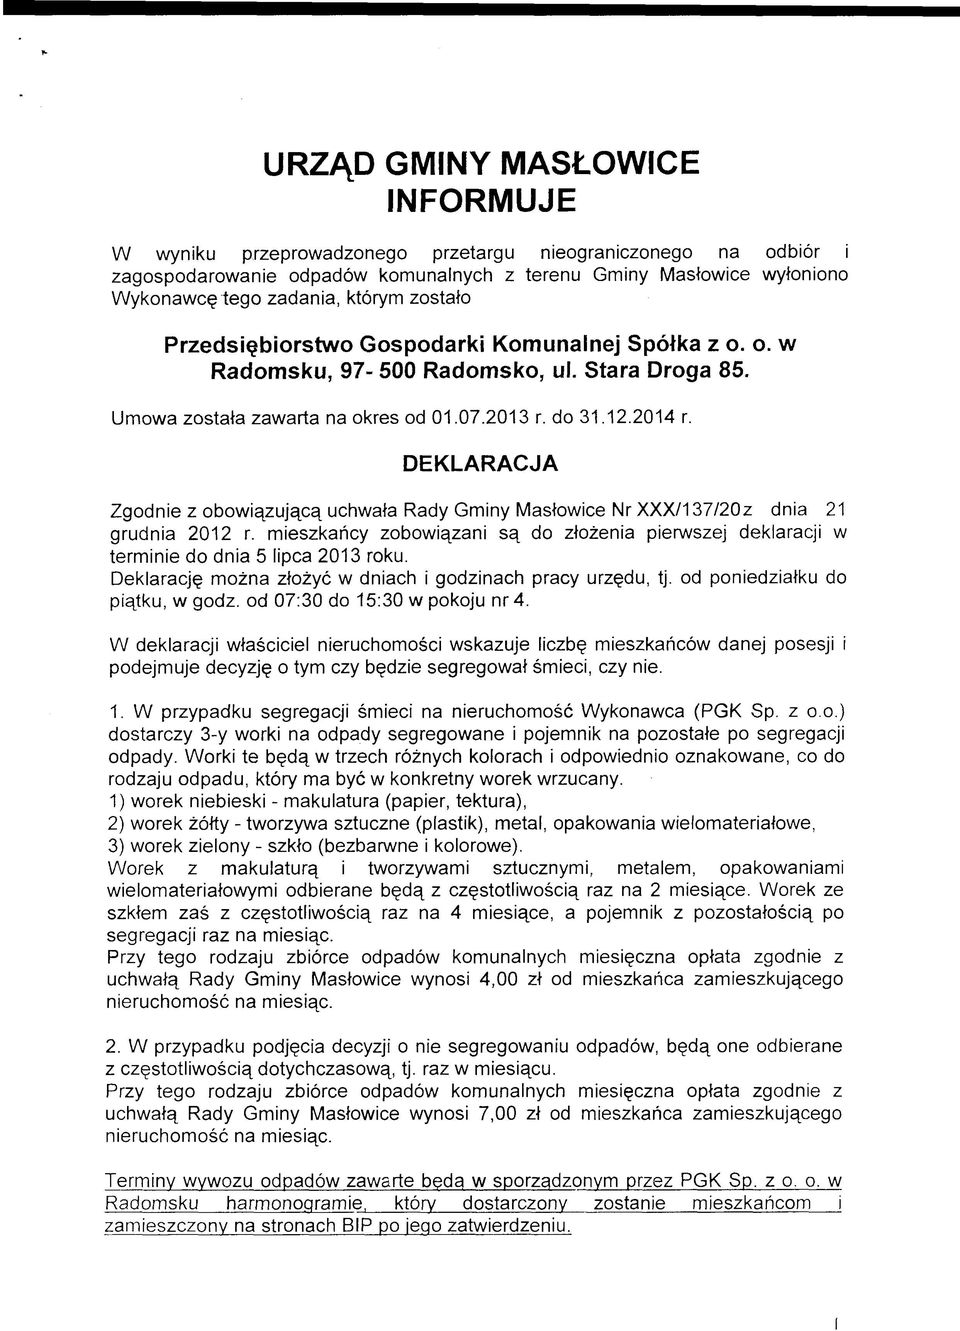 DEKLARACJA Zgodnie z obowiązującą uchwała Rady Gminy Masłowice Nr XXX/137/20z dnia 21 grudnia 2012 r. mieszkańcy zobowiązani są do złożenia pierwszej deklaracji w terminie do dnia 5 lipca 2013 roku.